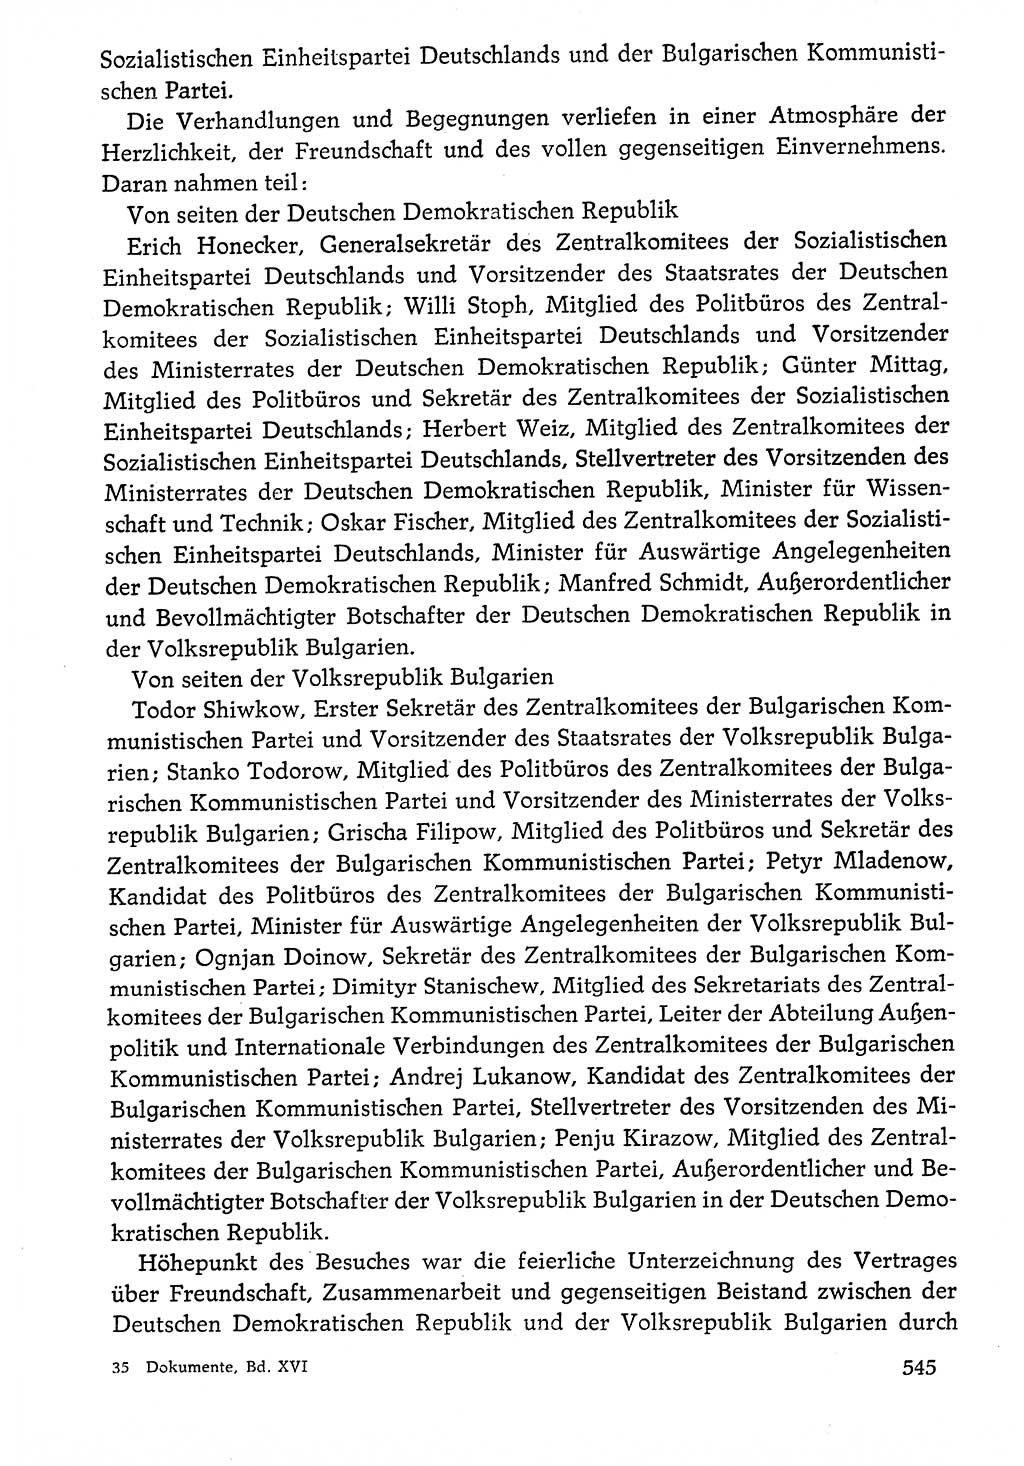 Dokumente der Sozialistischen Einheitspartei Deutschlands (SED) [Deutsche Demokratische Republik (DDR)] 1976-1977, Seite 545 (Dok. SED DDR 1976-1977, S. 545)